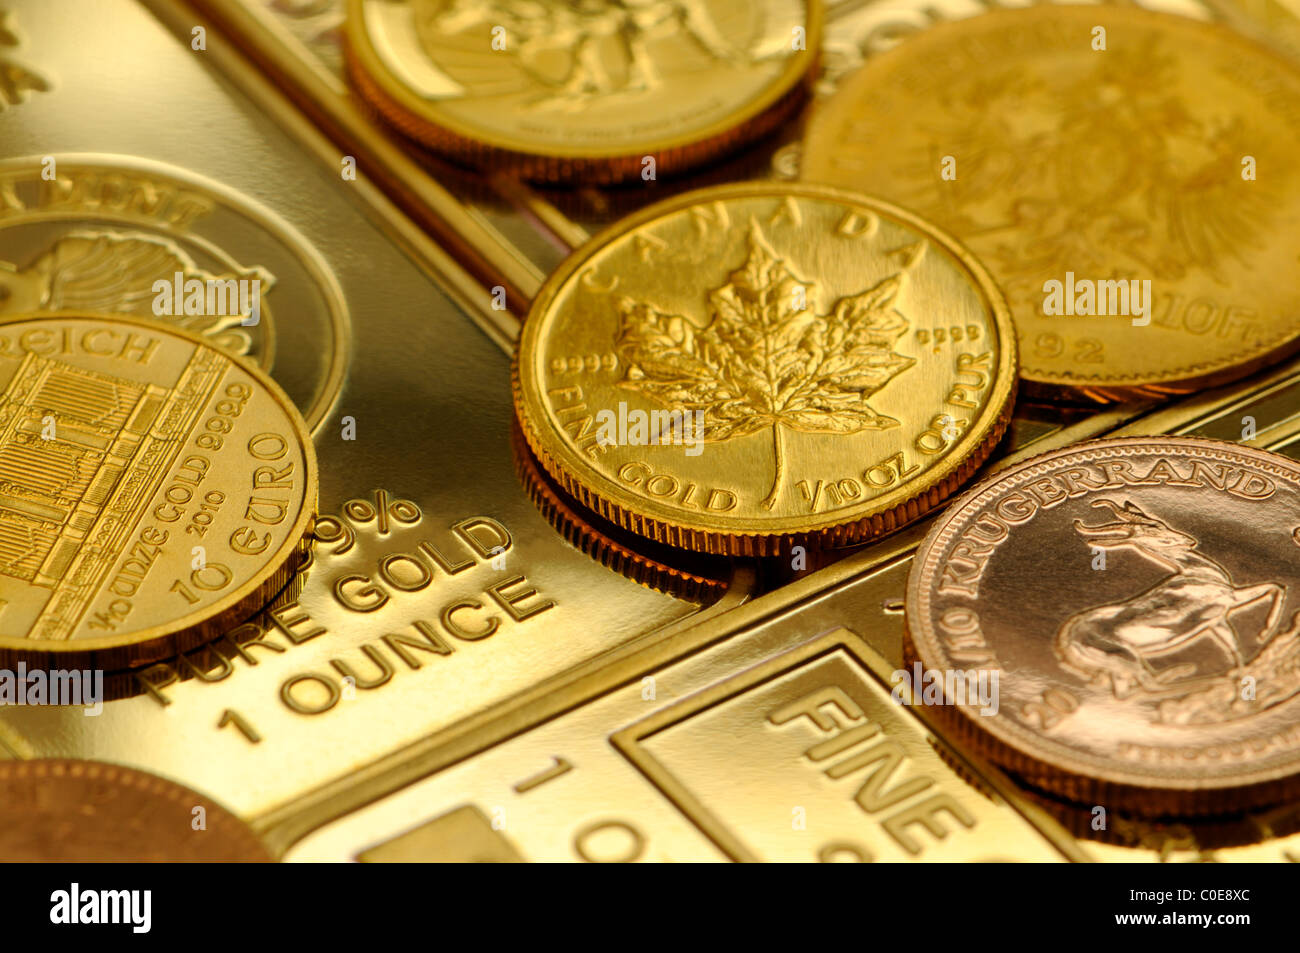 Los lingotes de oro - 1oz bares y pequeñas monedas Foto de stock